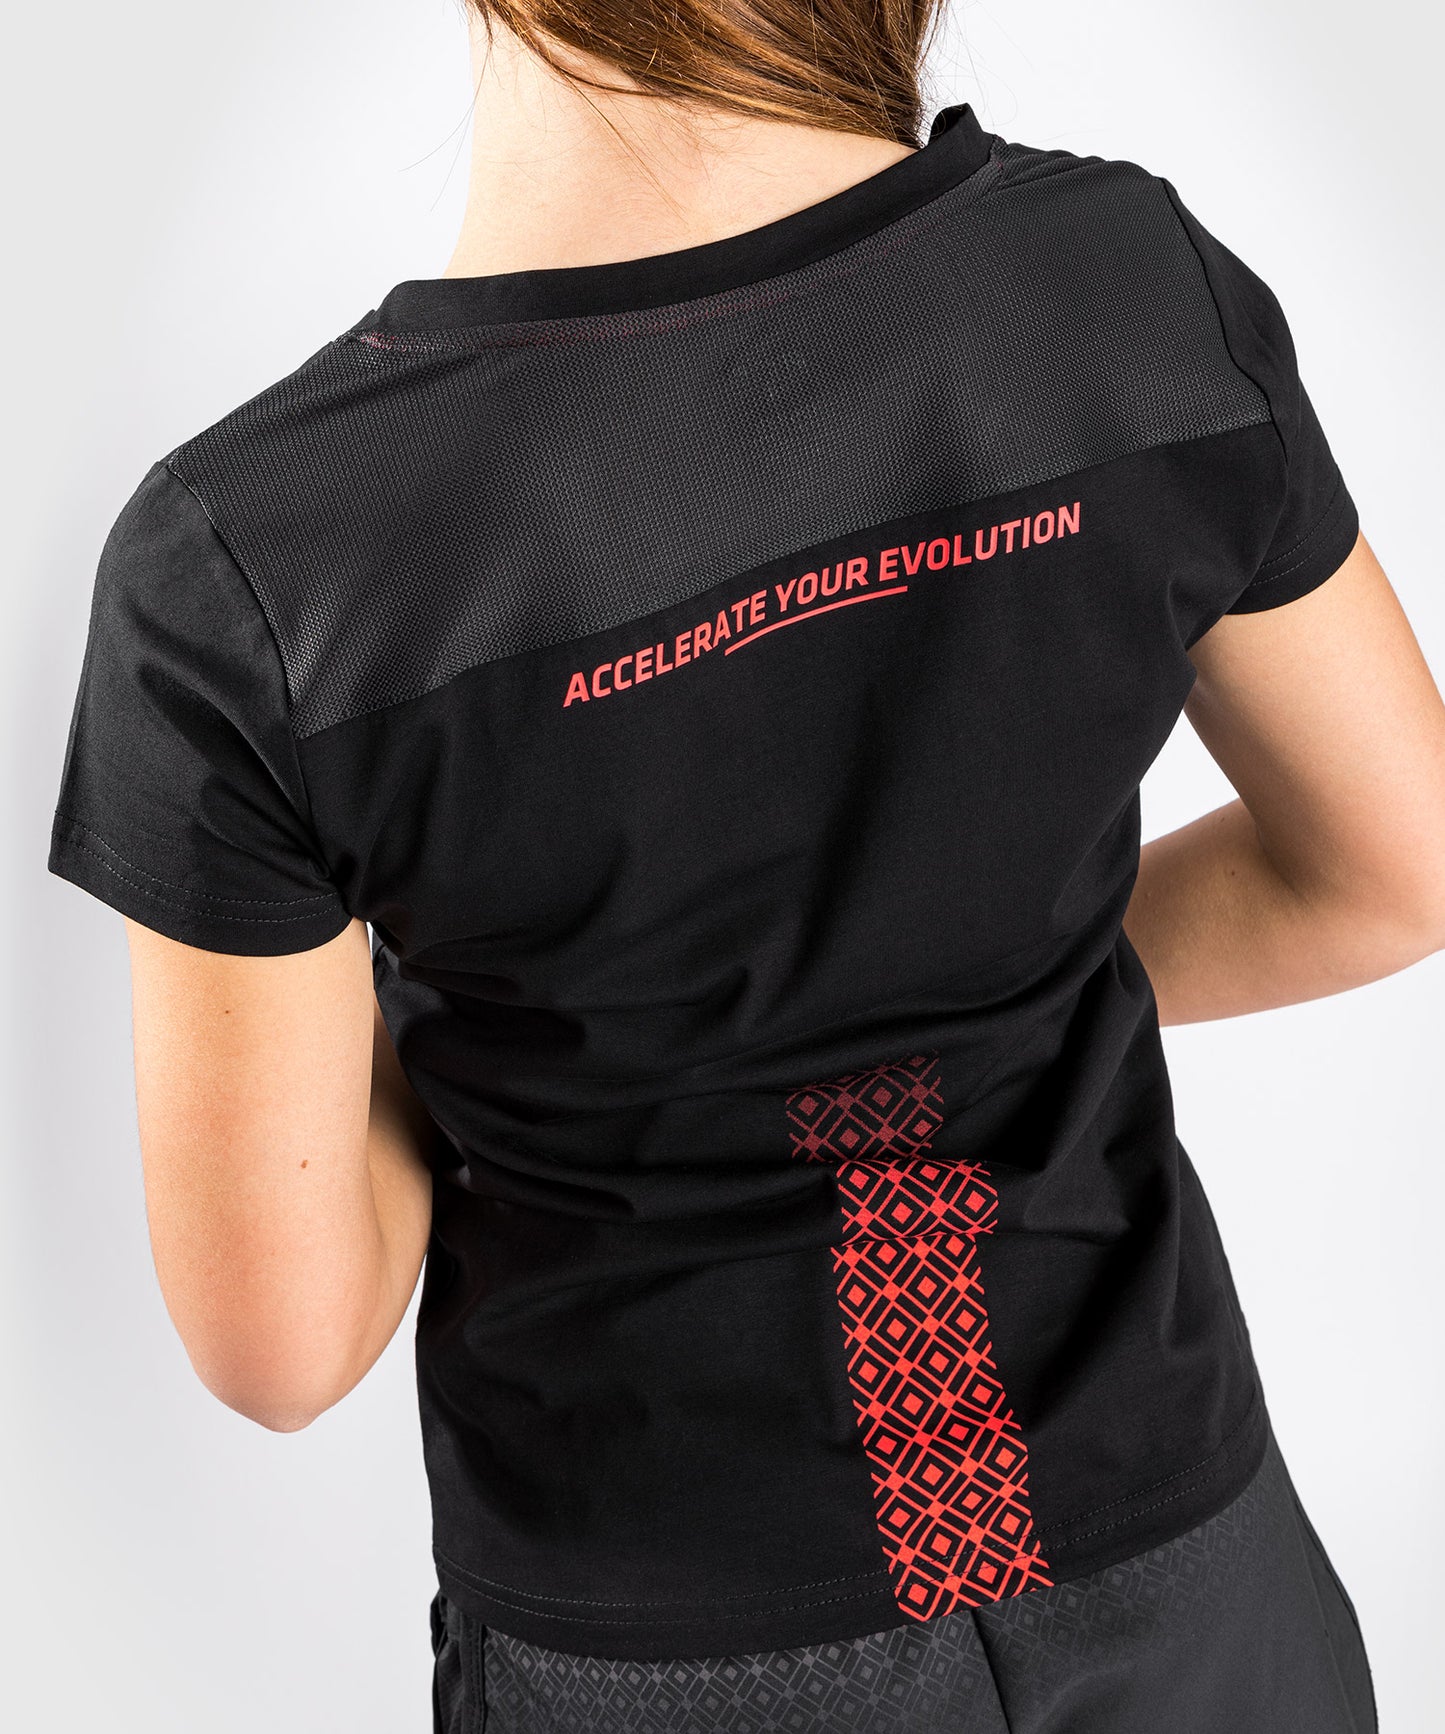 T-shirt Venum UFC Performance Institute - Per Donna - Nero